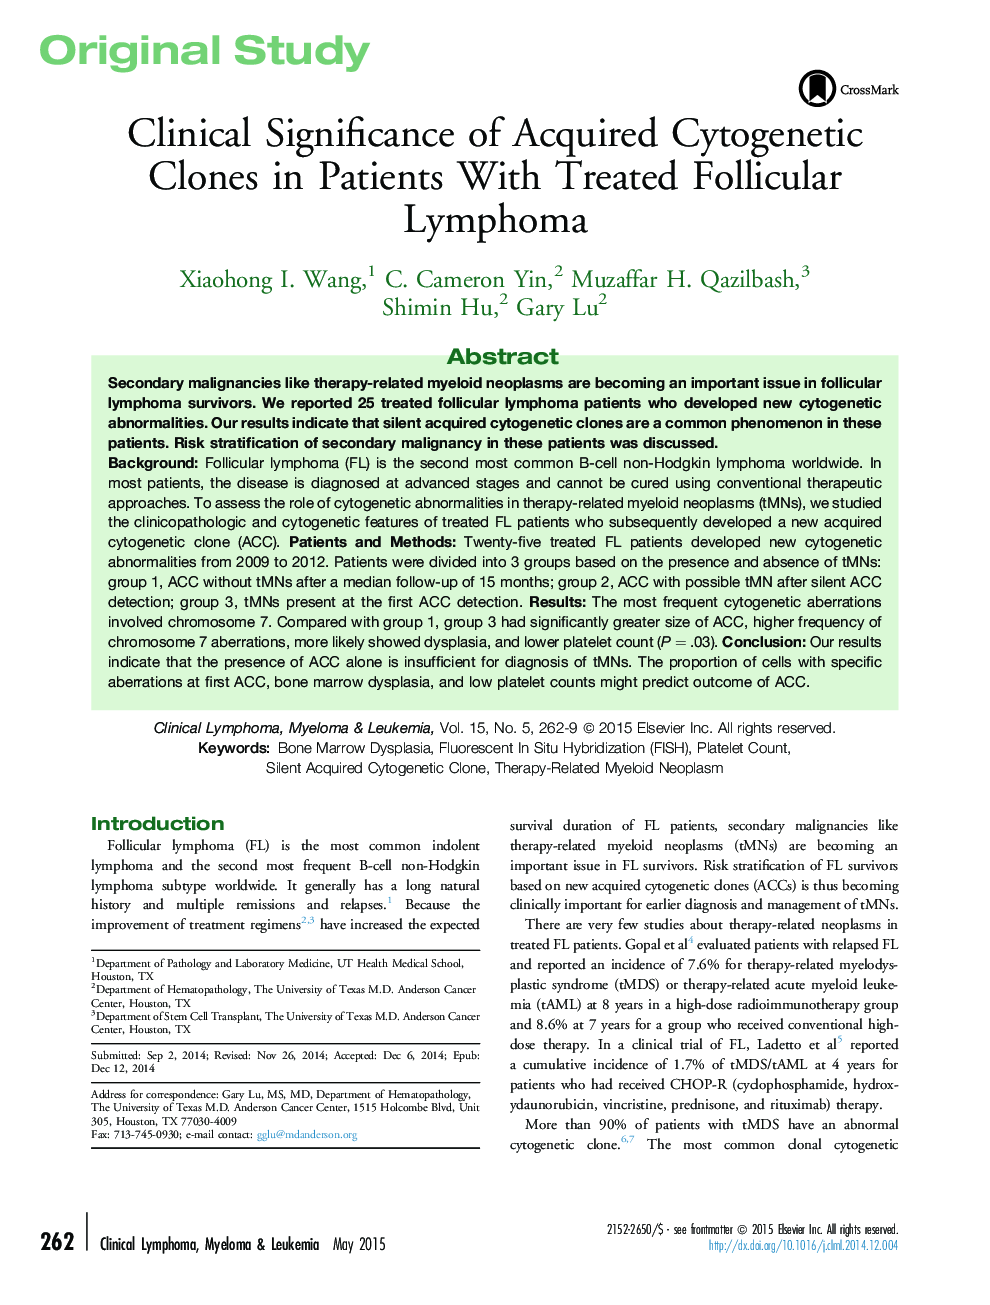 اهمیت بالینی کلون های سیتوژنتیک به دست آمده در بیماران مبتلا به لنفوم فولیکولار 